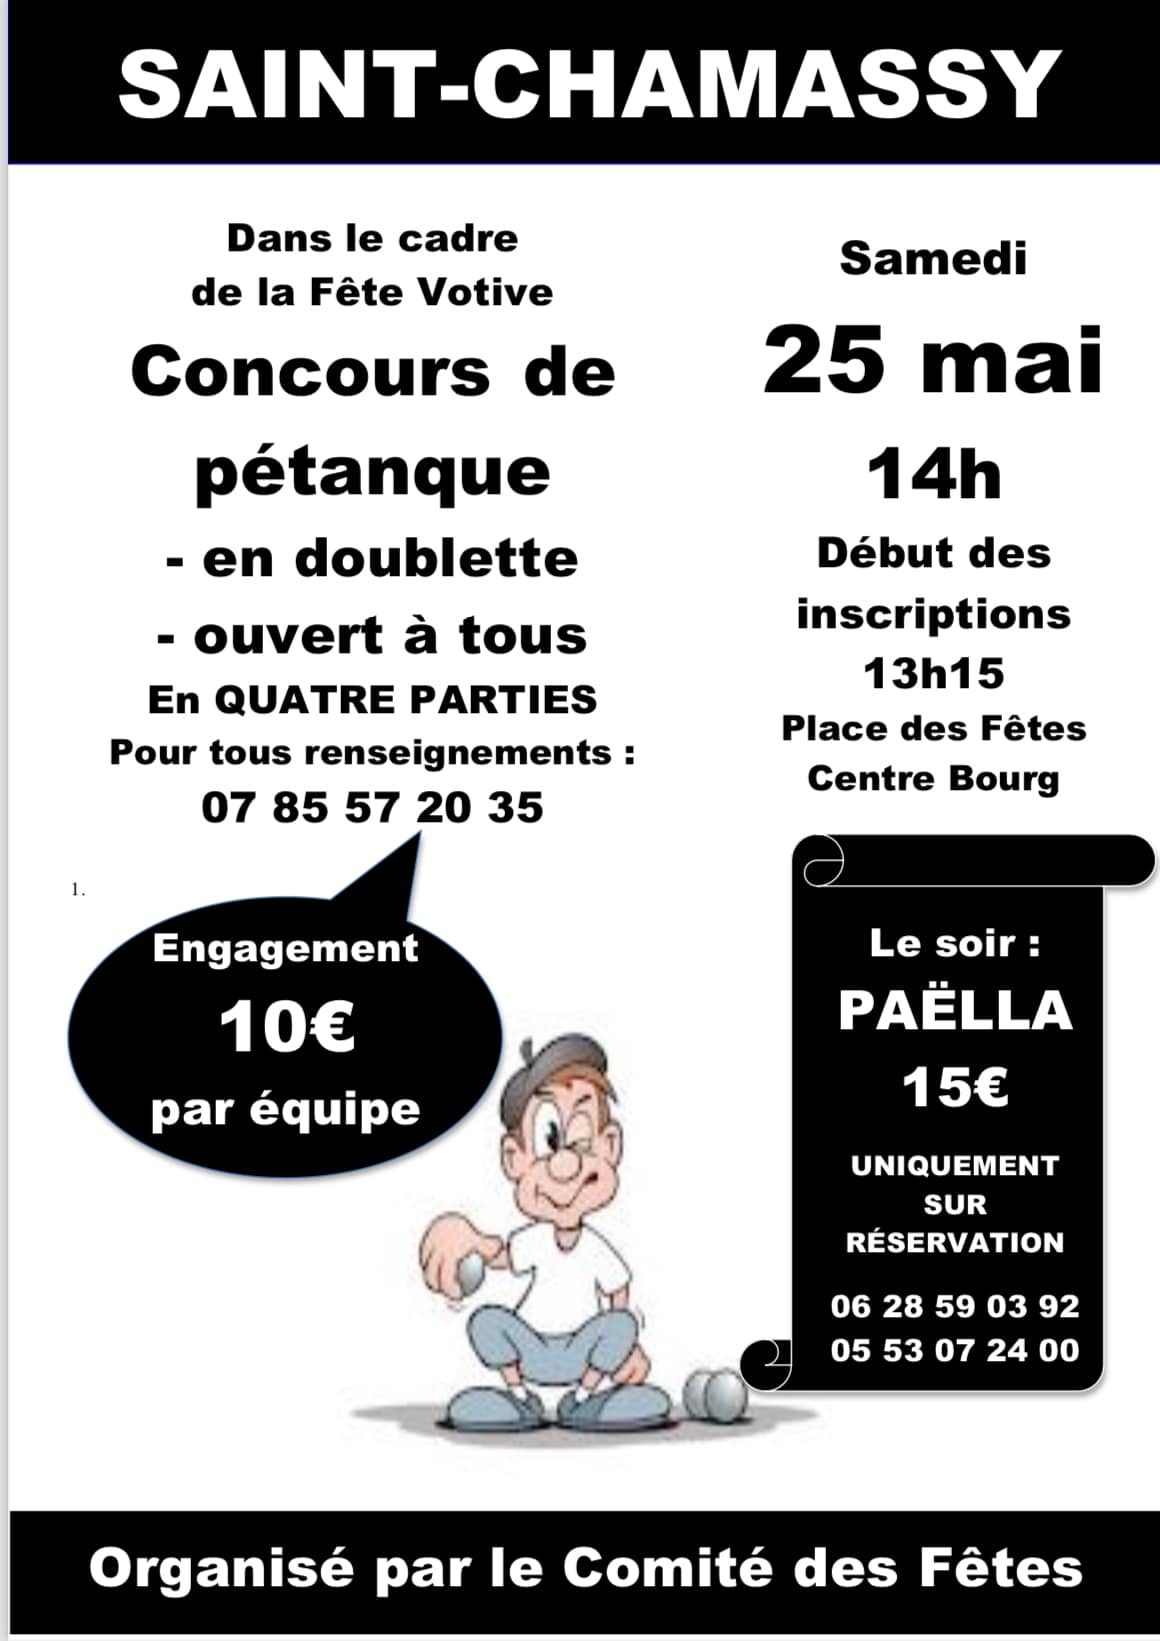 Concours de pétanque Ouvert à tous - Saint-Chamassy